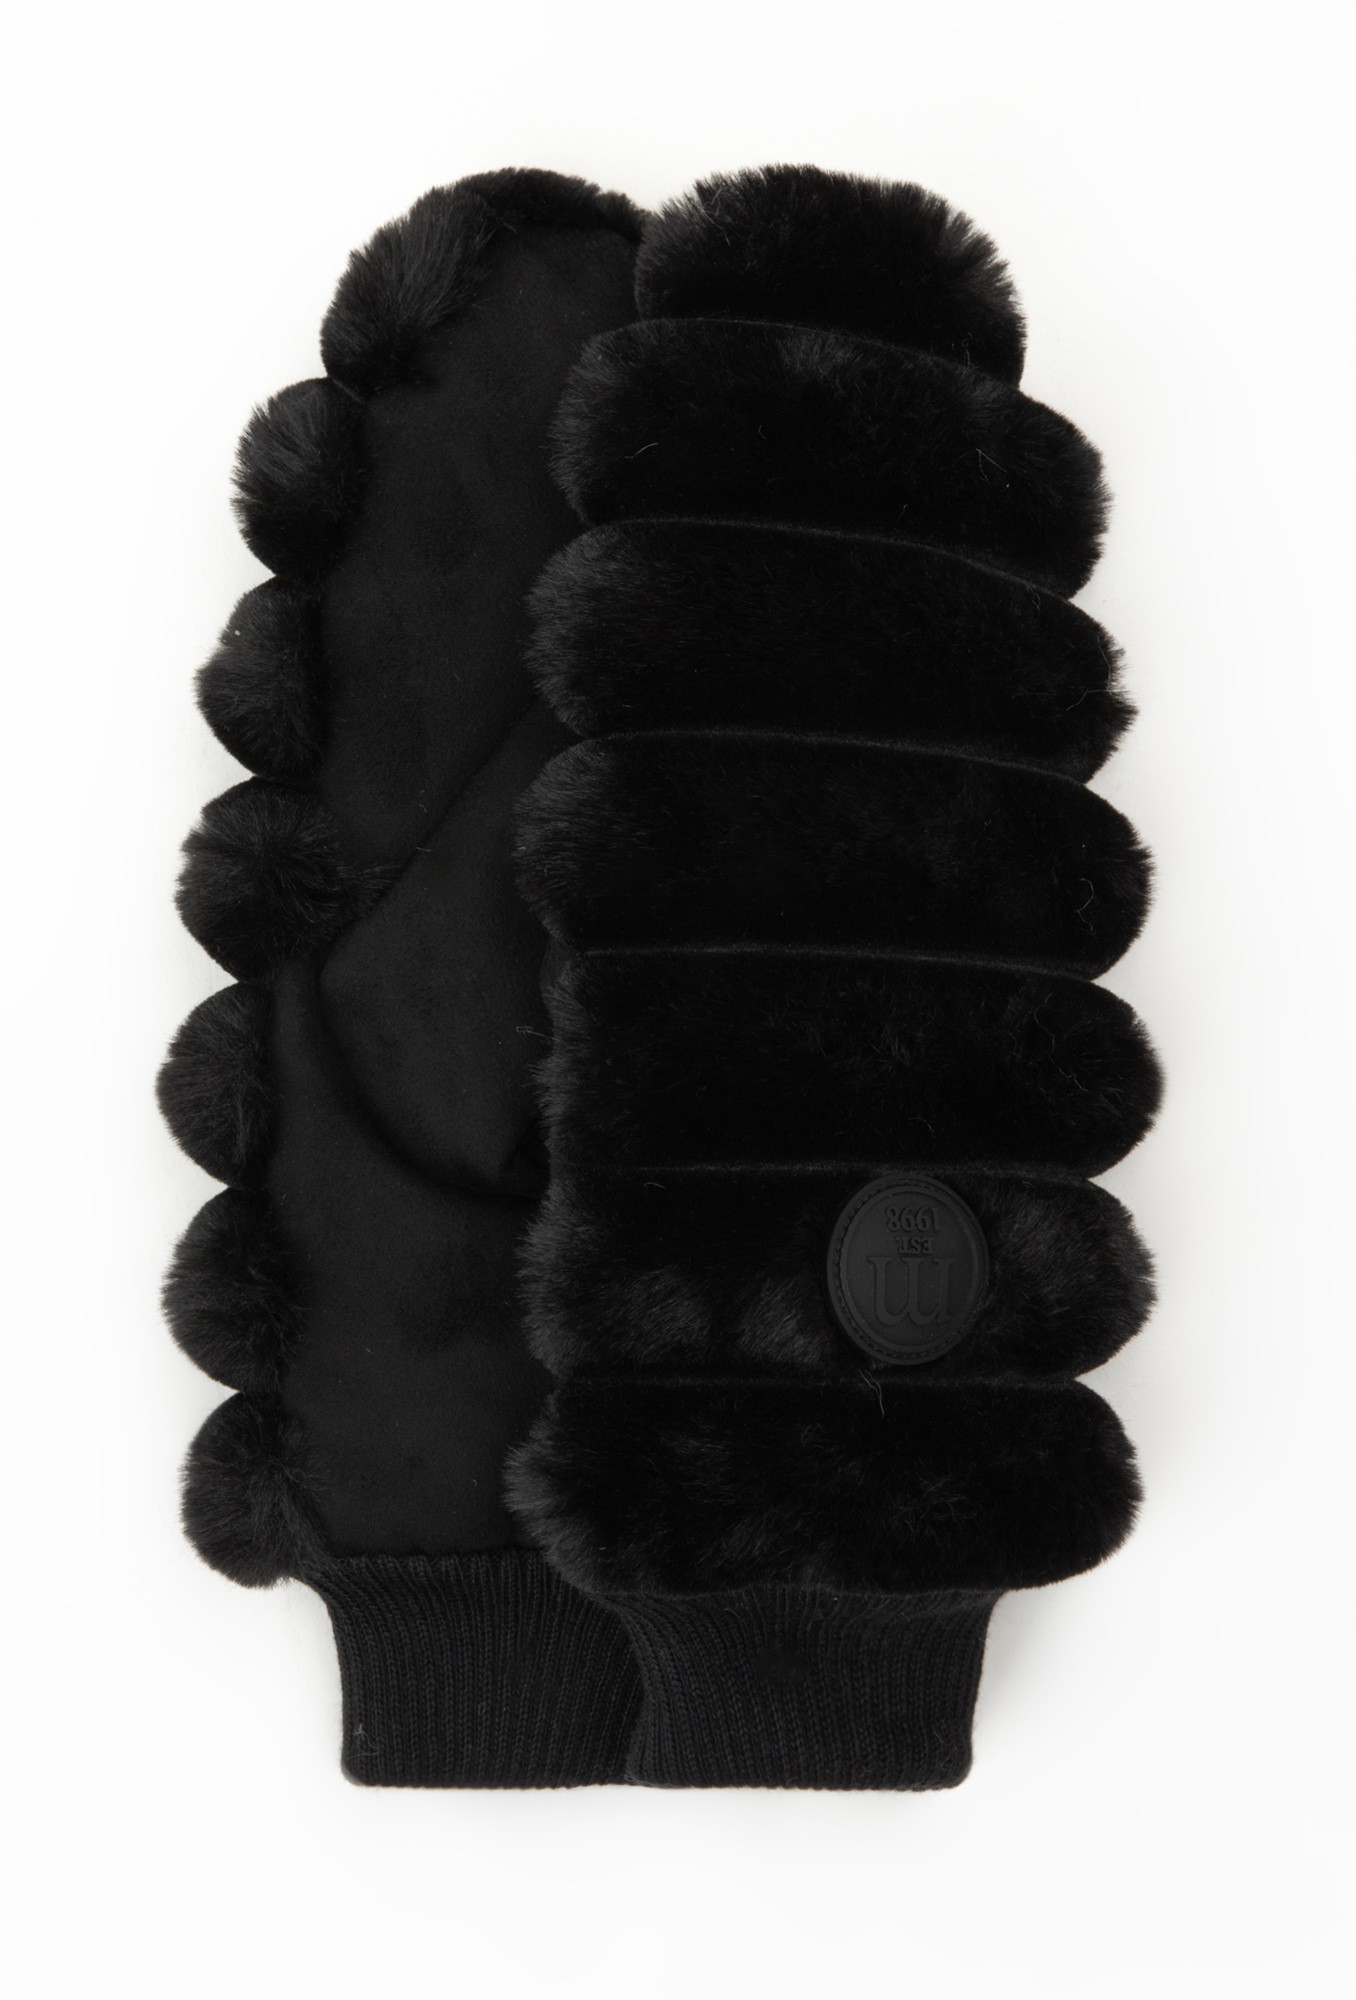 Rukavice palčáky Monnari s kožešinou černé S/M